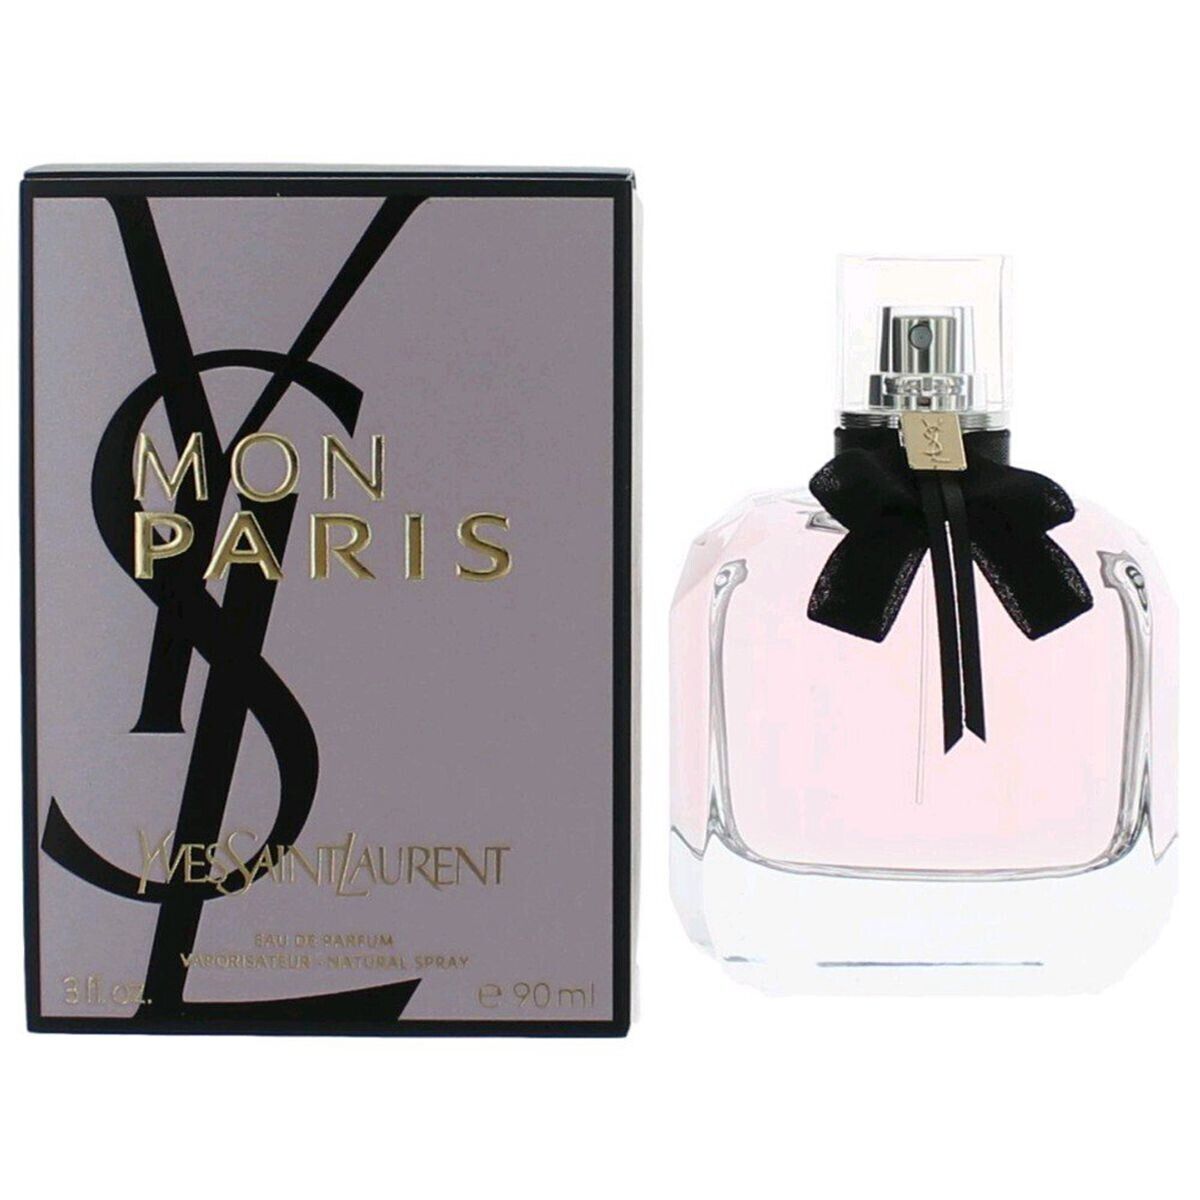 NEW Women's Fragrances Mon Paris Eau De Parfum Ysl EDP Spray  3 oz Sealed in Box